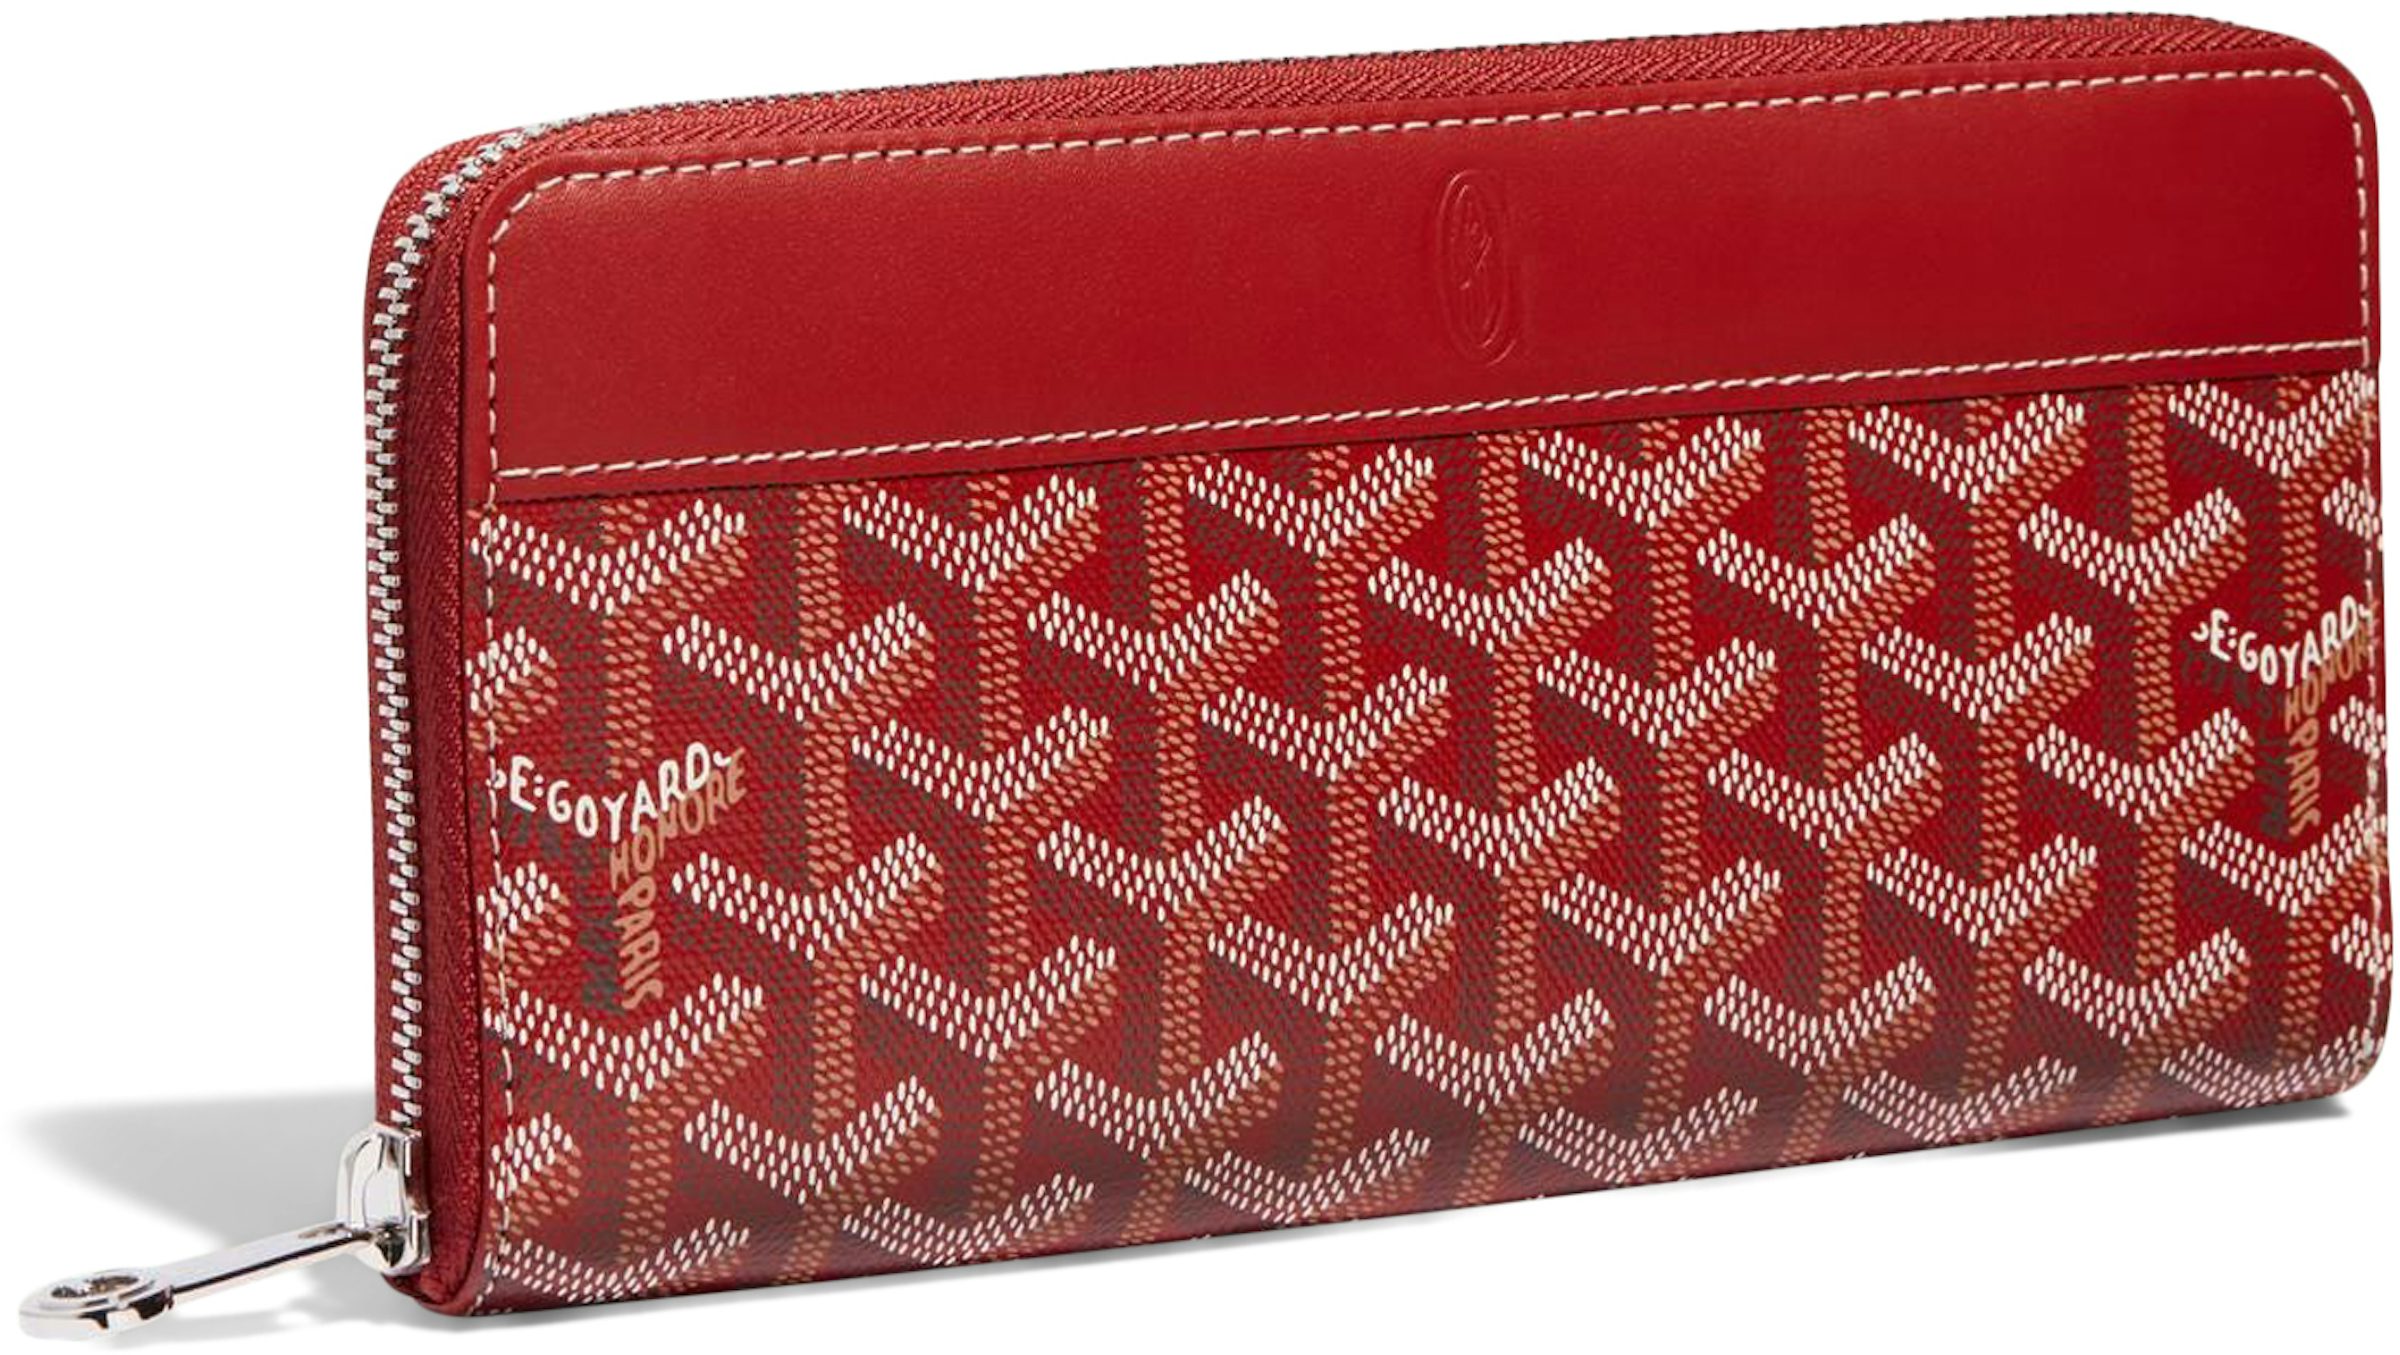 Goyard Matignon Wallet GM Red in Canvas/Calfskin with Palladium